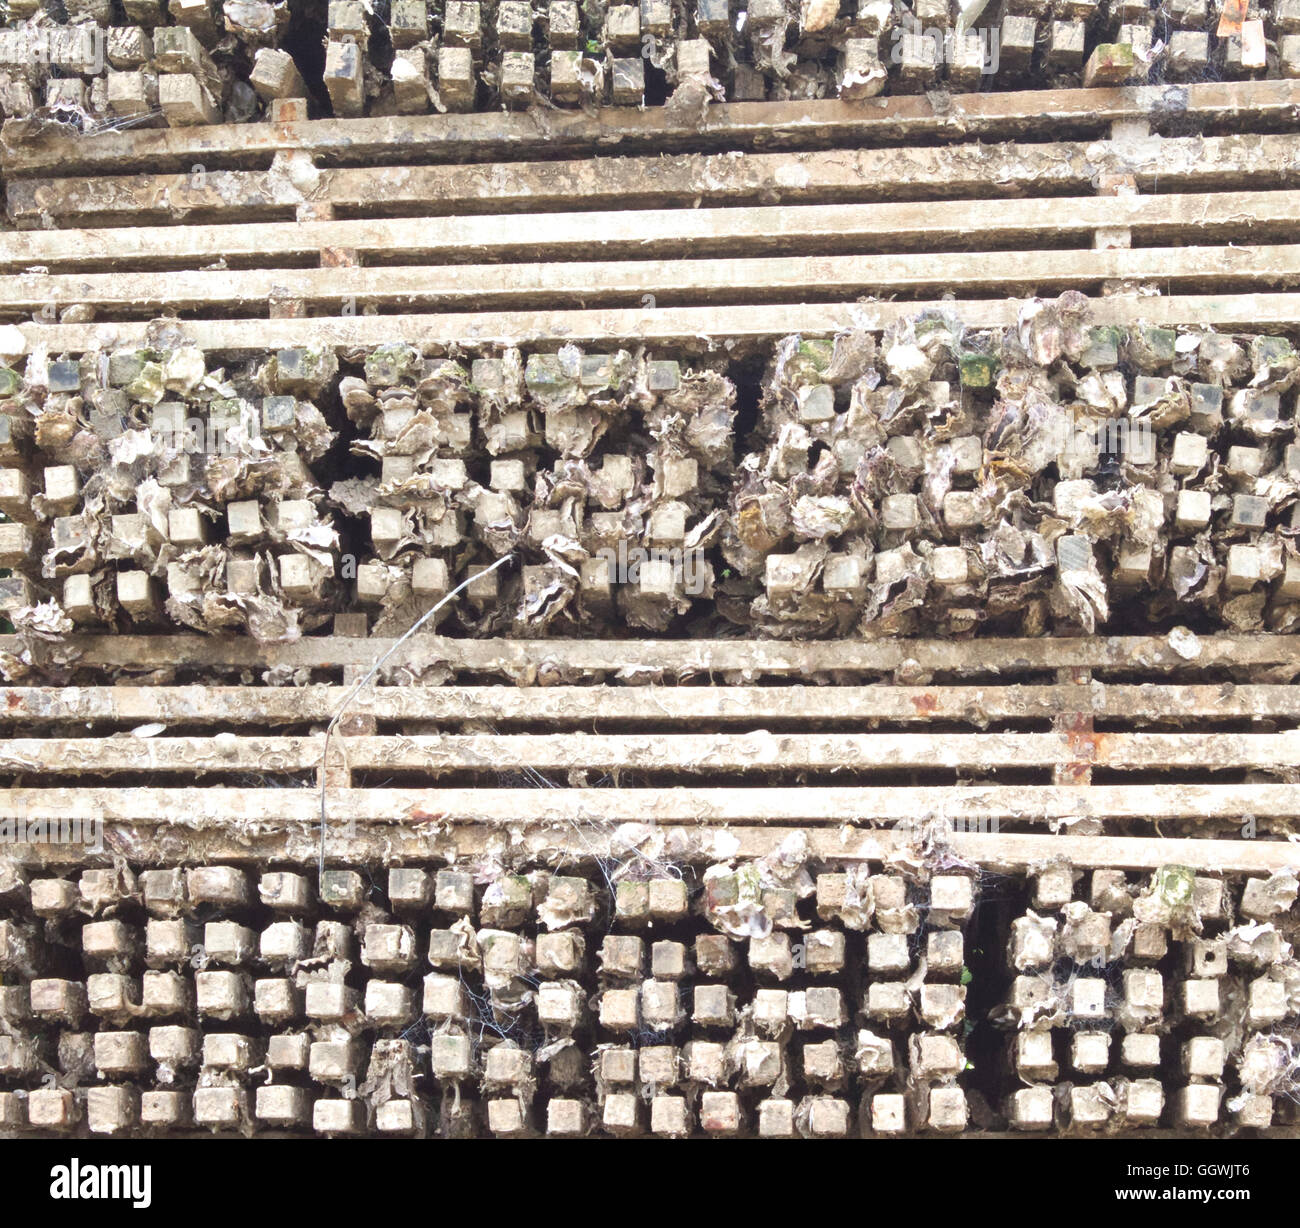 Las estacas utilizadas para el cultivo de ostras Foto de stock